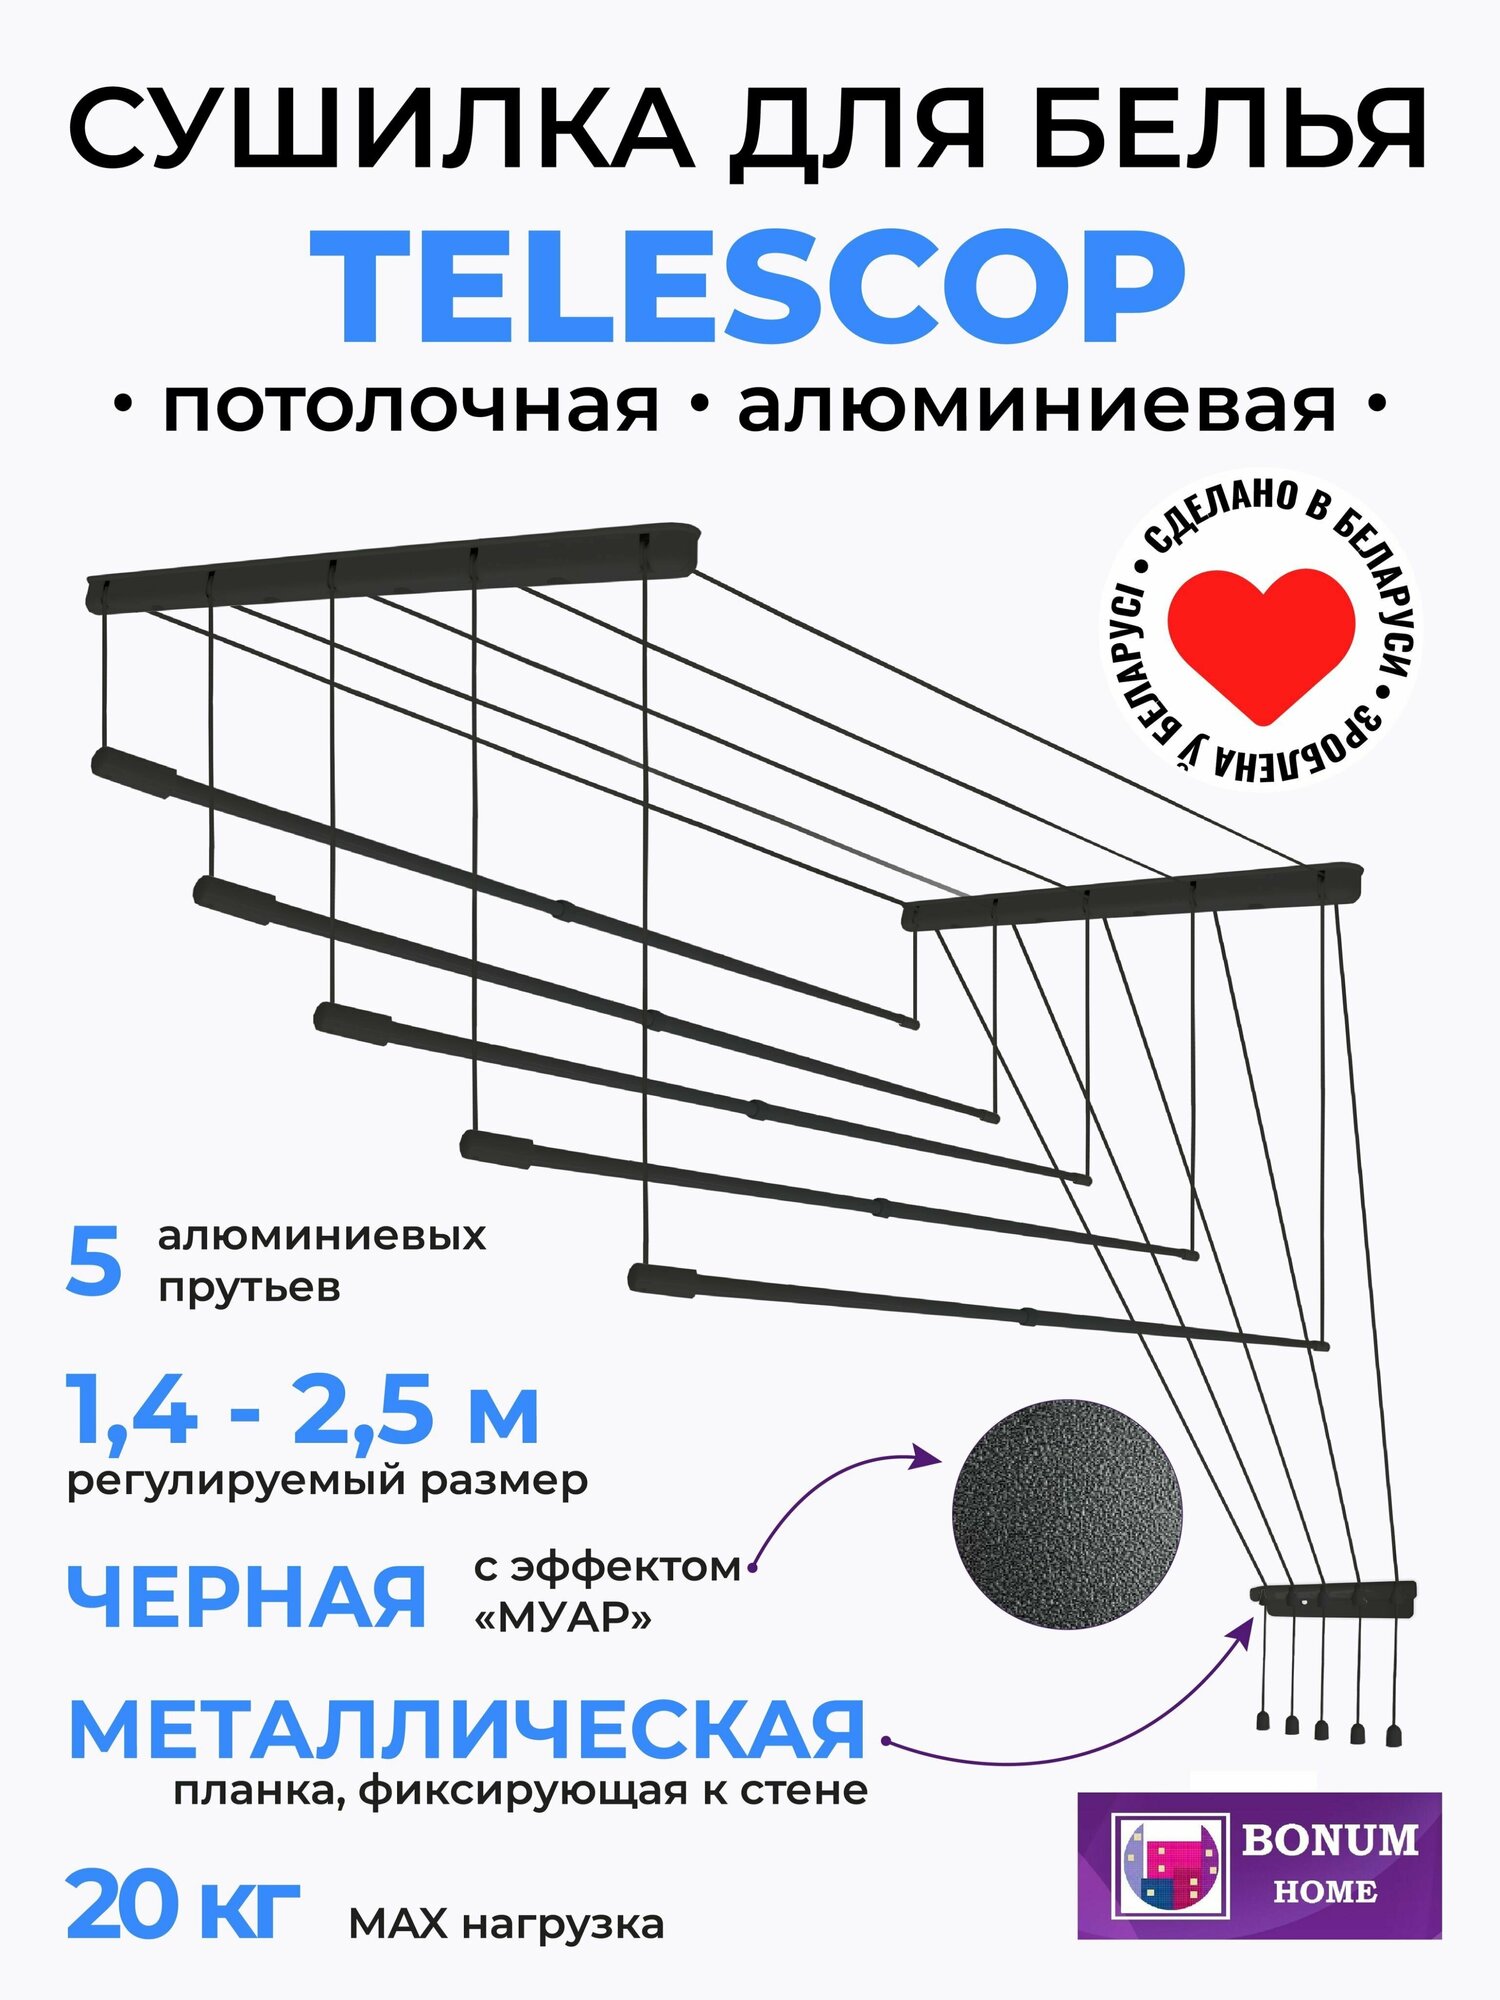 Сушилка для белья"Black Style" потолочная навесная раздвижная телескопическая алюминиевая черная 14м-25м.5 прутьев. Беларусь.